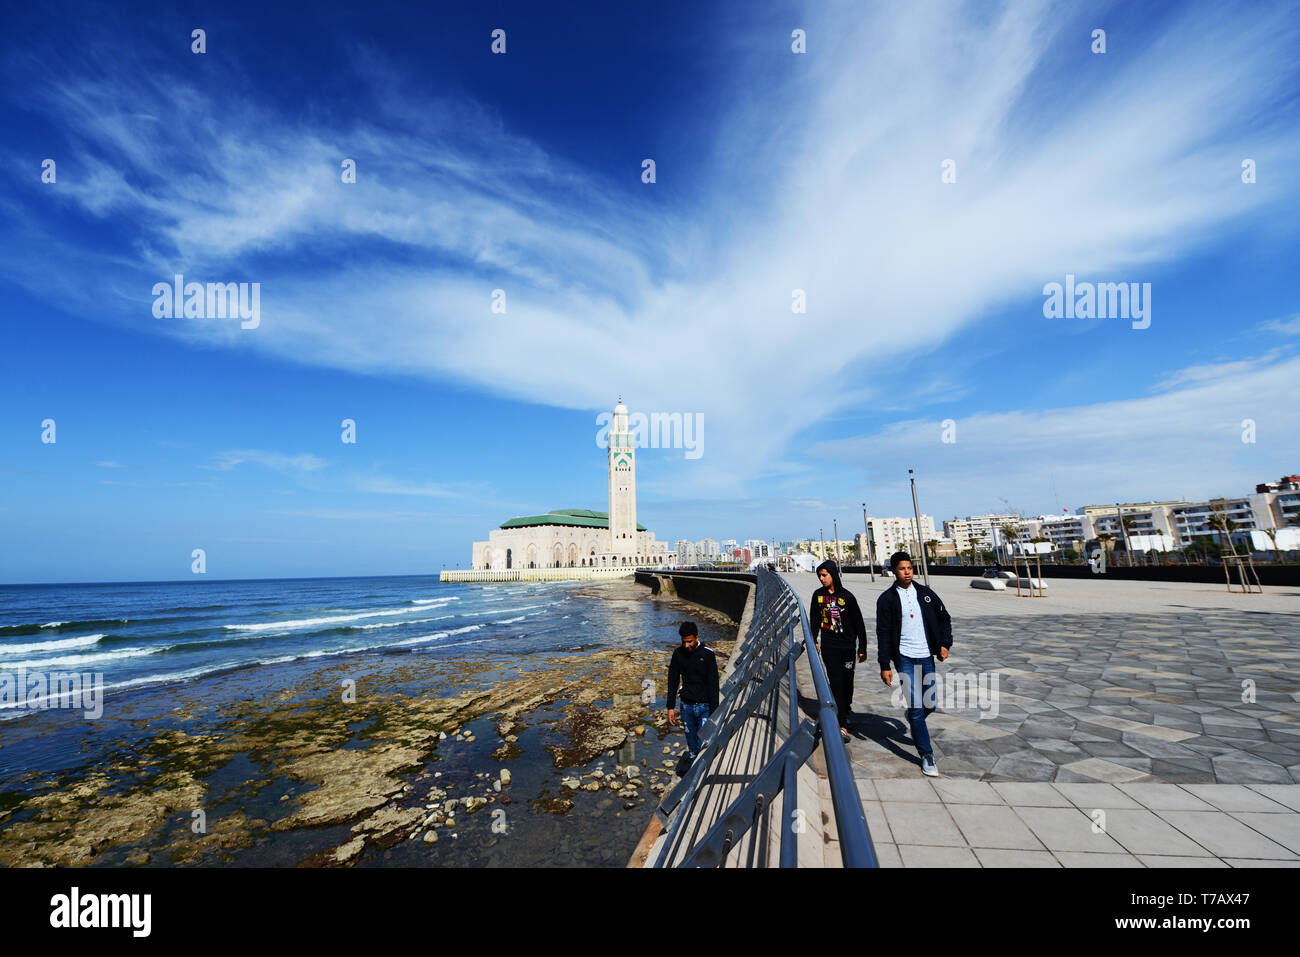 La nuova e bella passeggiata lungo la costa dell'oceano Atlantico con la moschea di Hassan II in background. Foto Stock